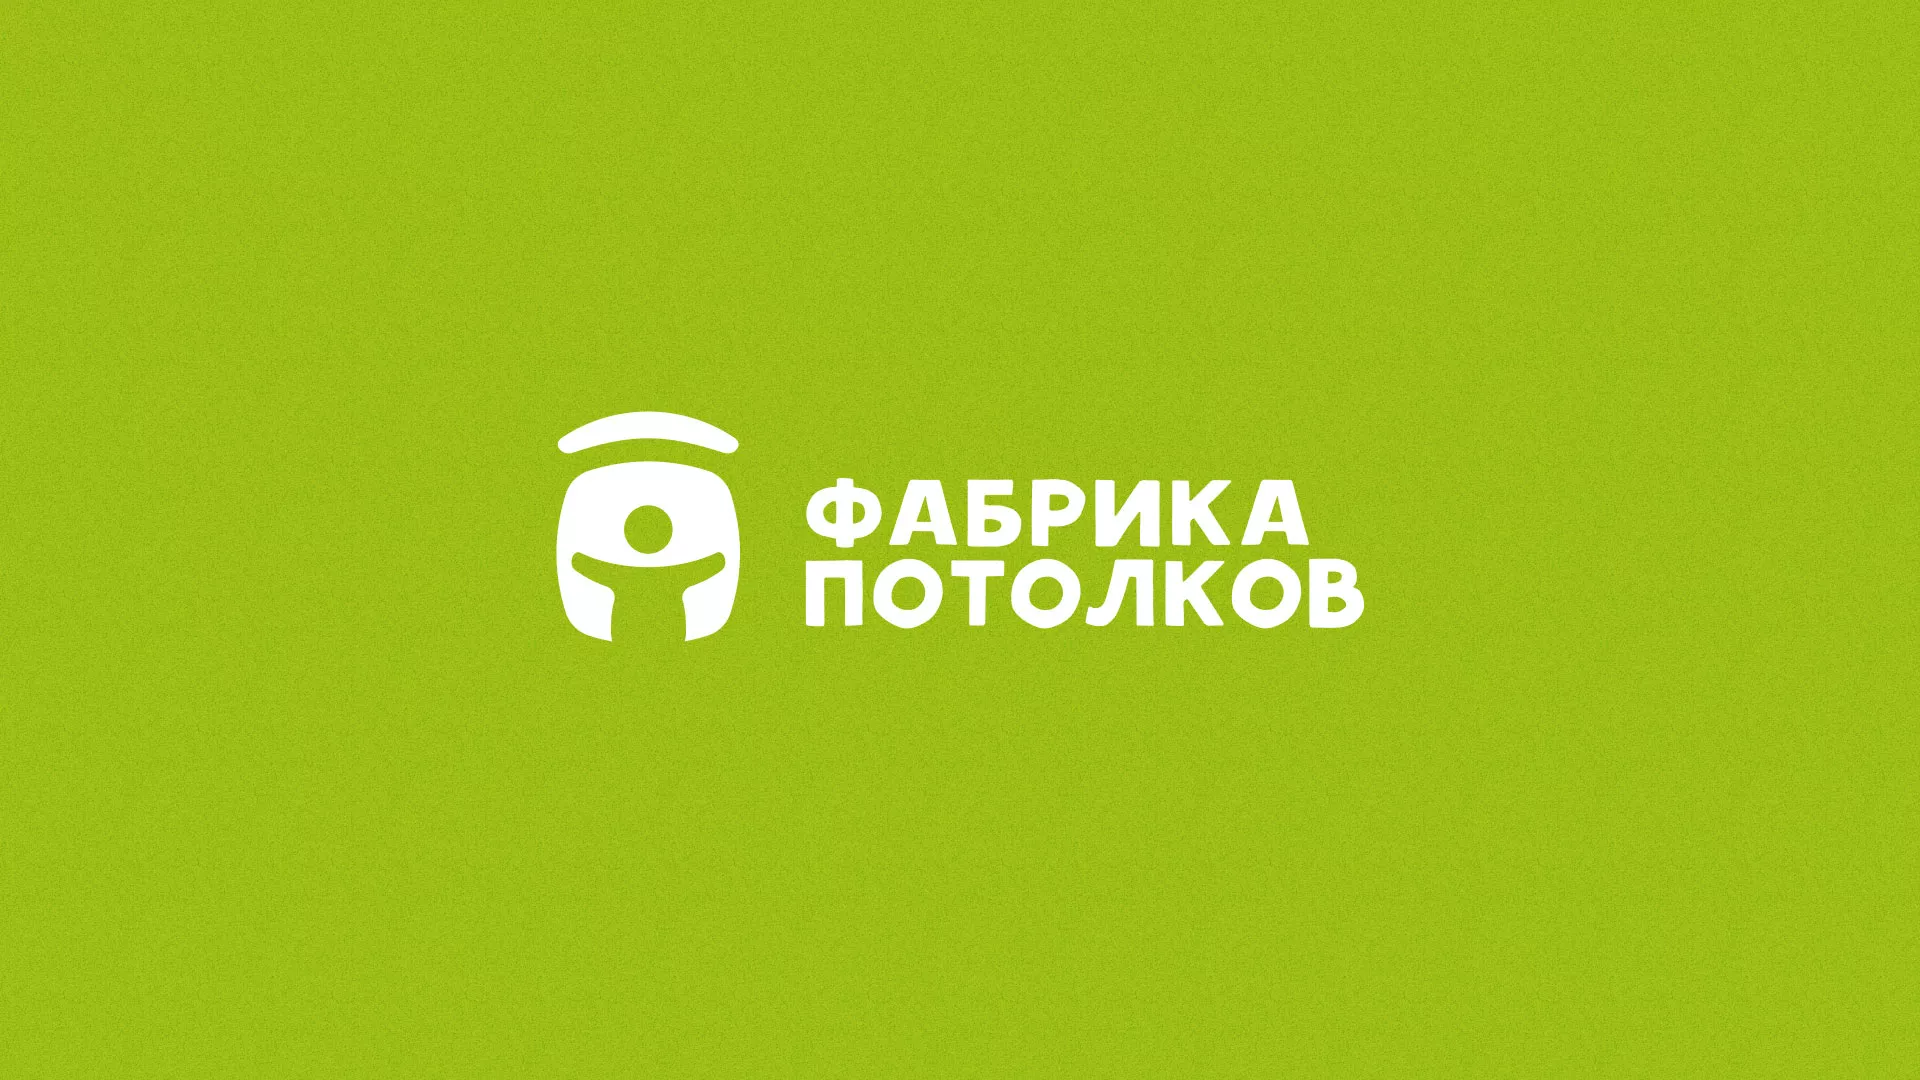 Разработка логотипа для производства натяжных потолков в Усть-Джегуте